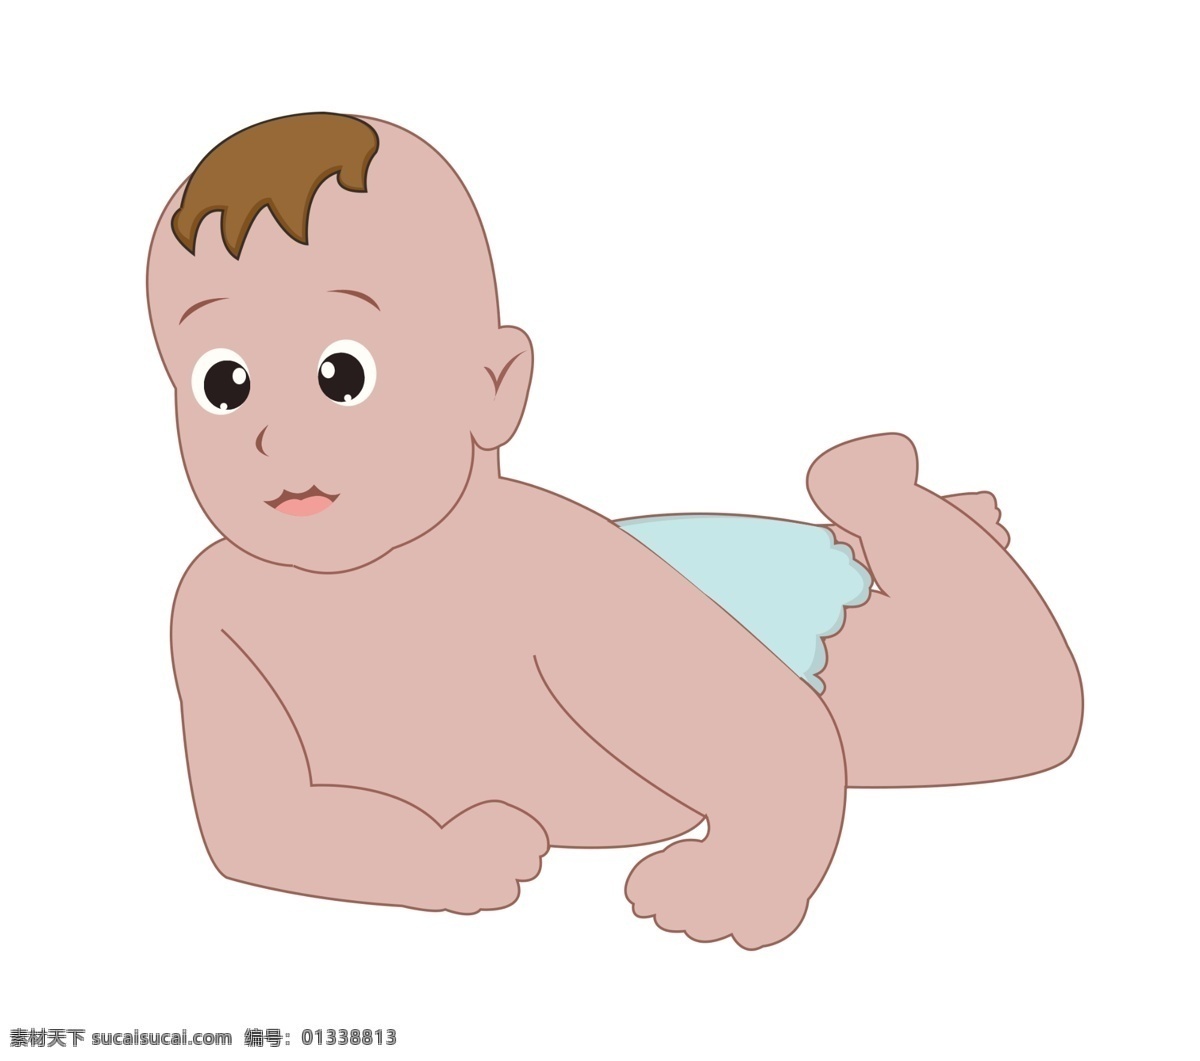 趴 玩耍 婴儿 插画 可爱的婴儿 卡通插画 婴儿插画 孩子插画 宝宝 小孩 襁褓婴儿 趴着的婴儿